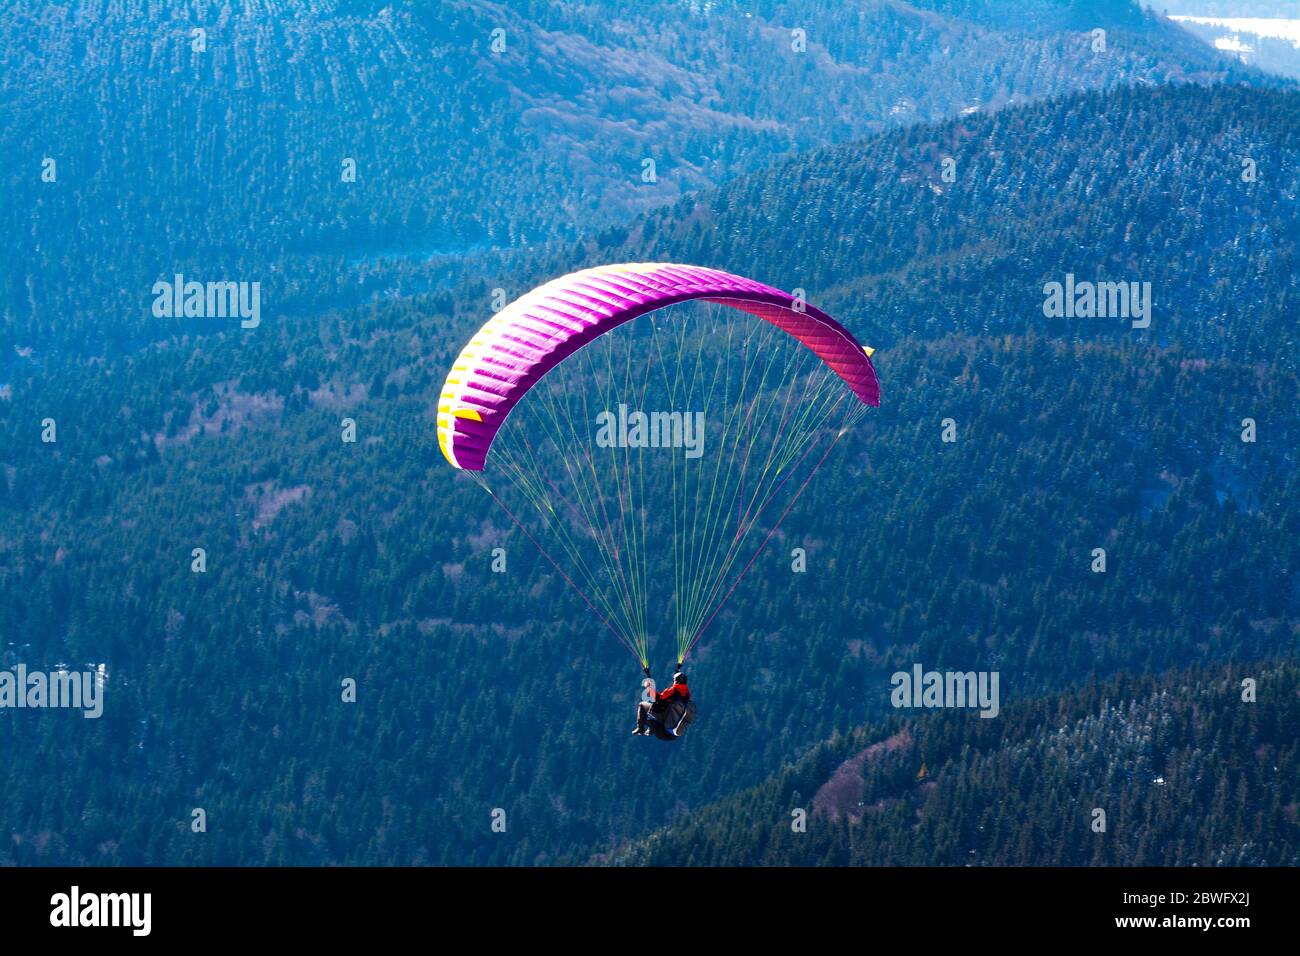 Paragliding, Puy de Dome volcano, Auvergne-Rhone-Alpes, France Stock Photo